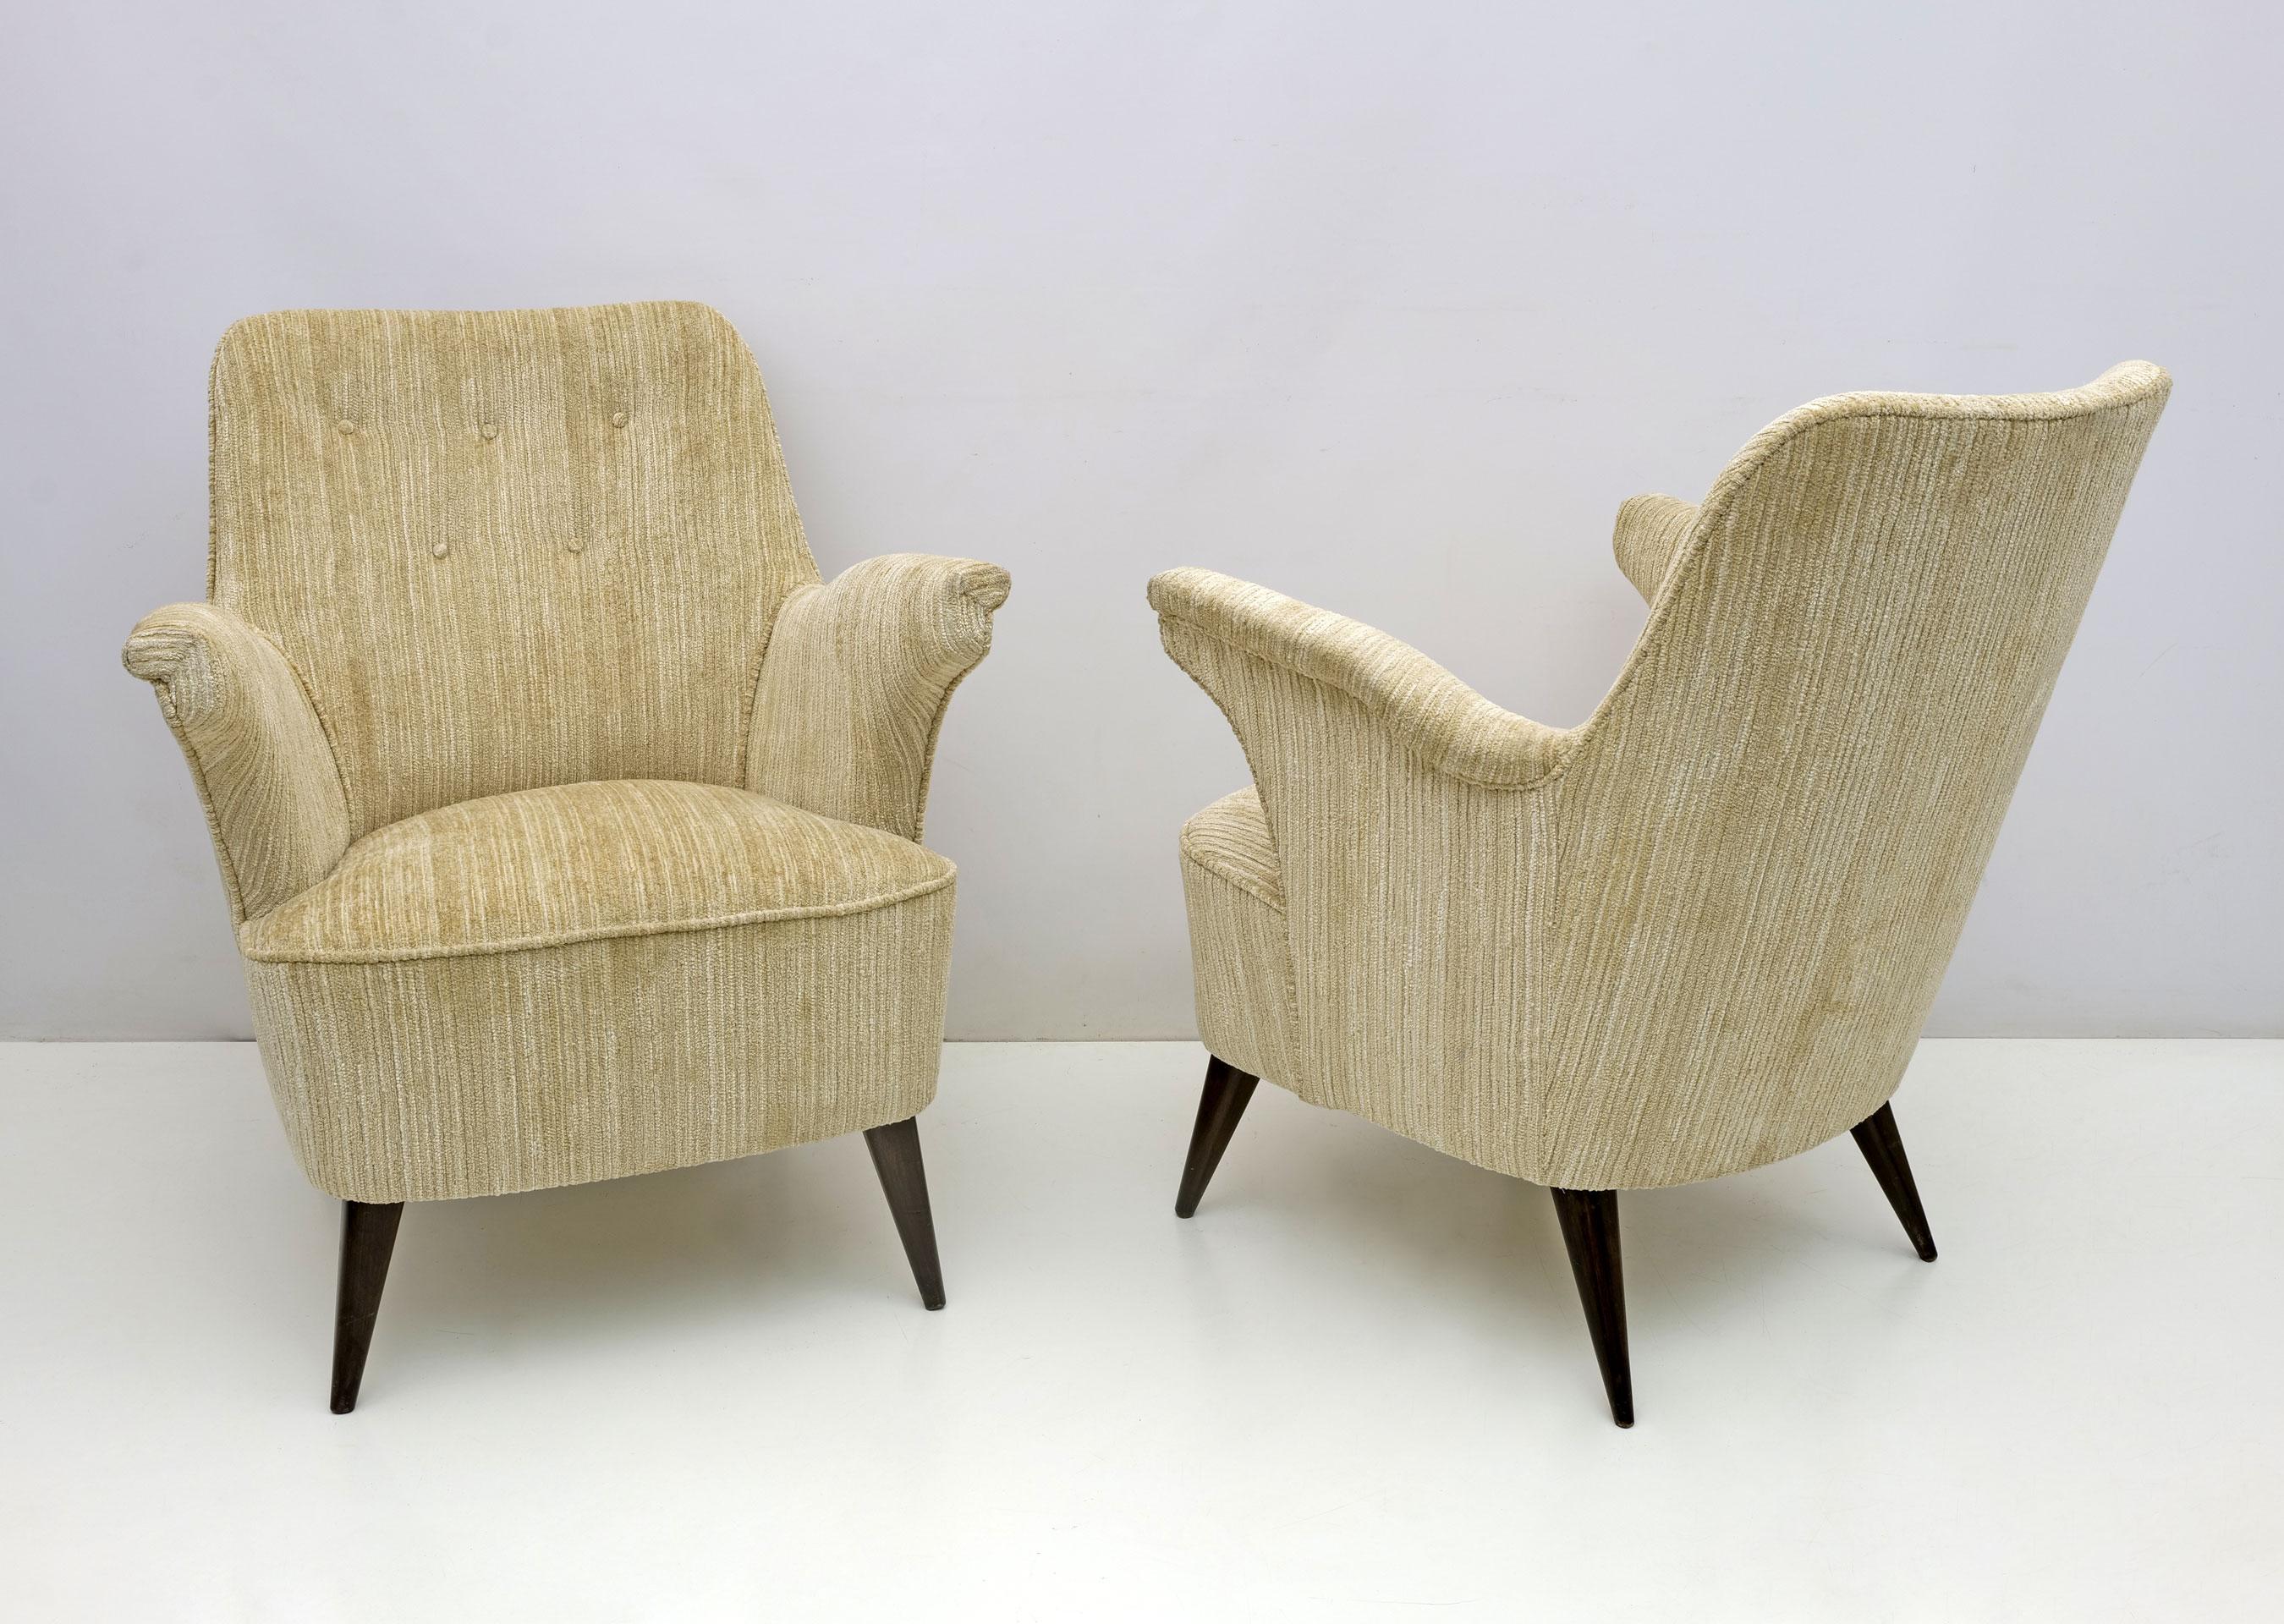 Paire de fauteuils conçus par Nino Zoncada et produits par Cassina dans les années 1950. Les fauteuils ont été récemment restaurés et tapissés de chenille nervurée de couleur ivoire, comme le montre la photo.

La société 